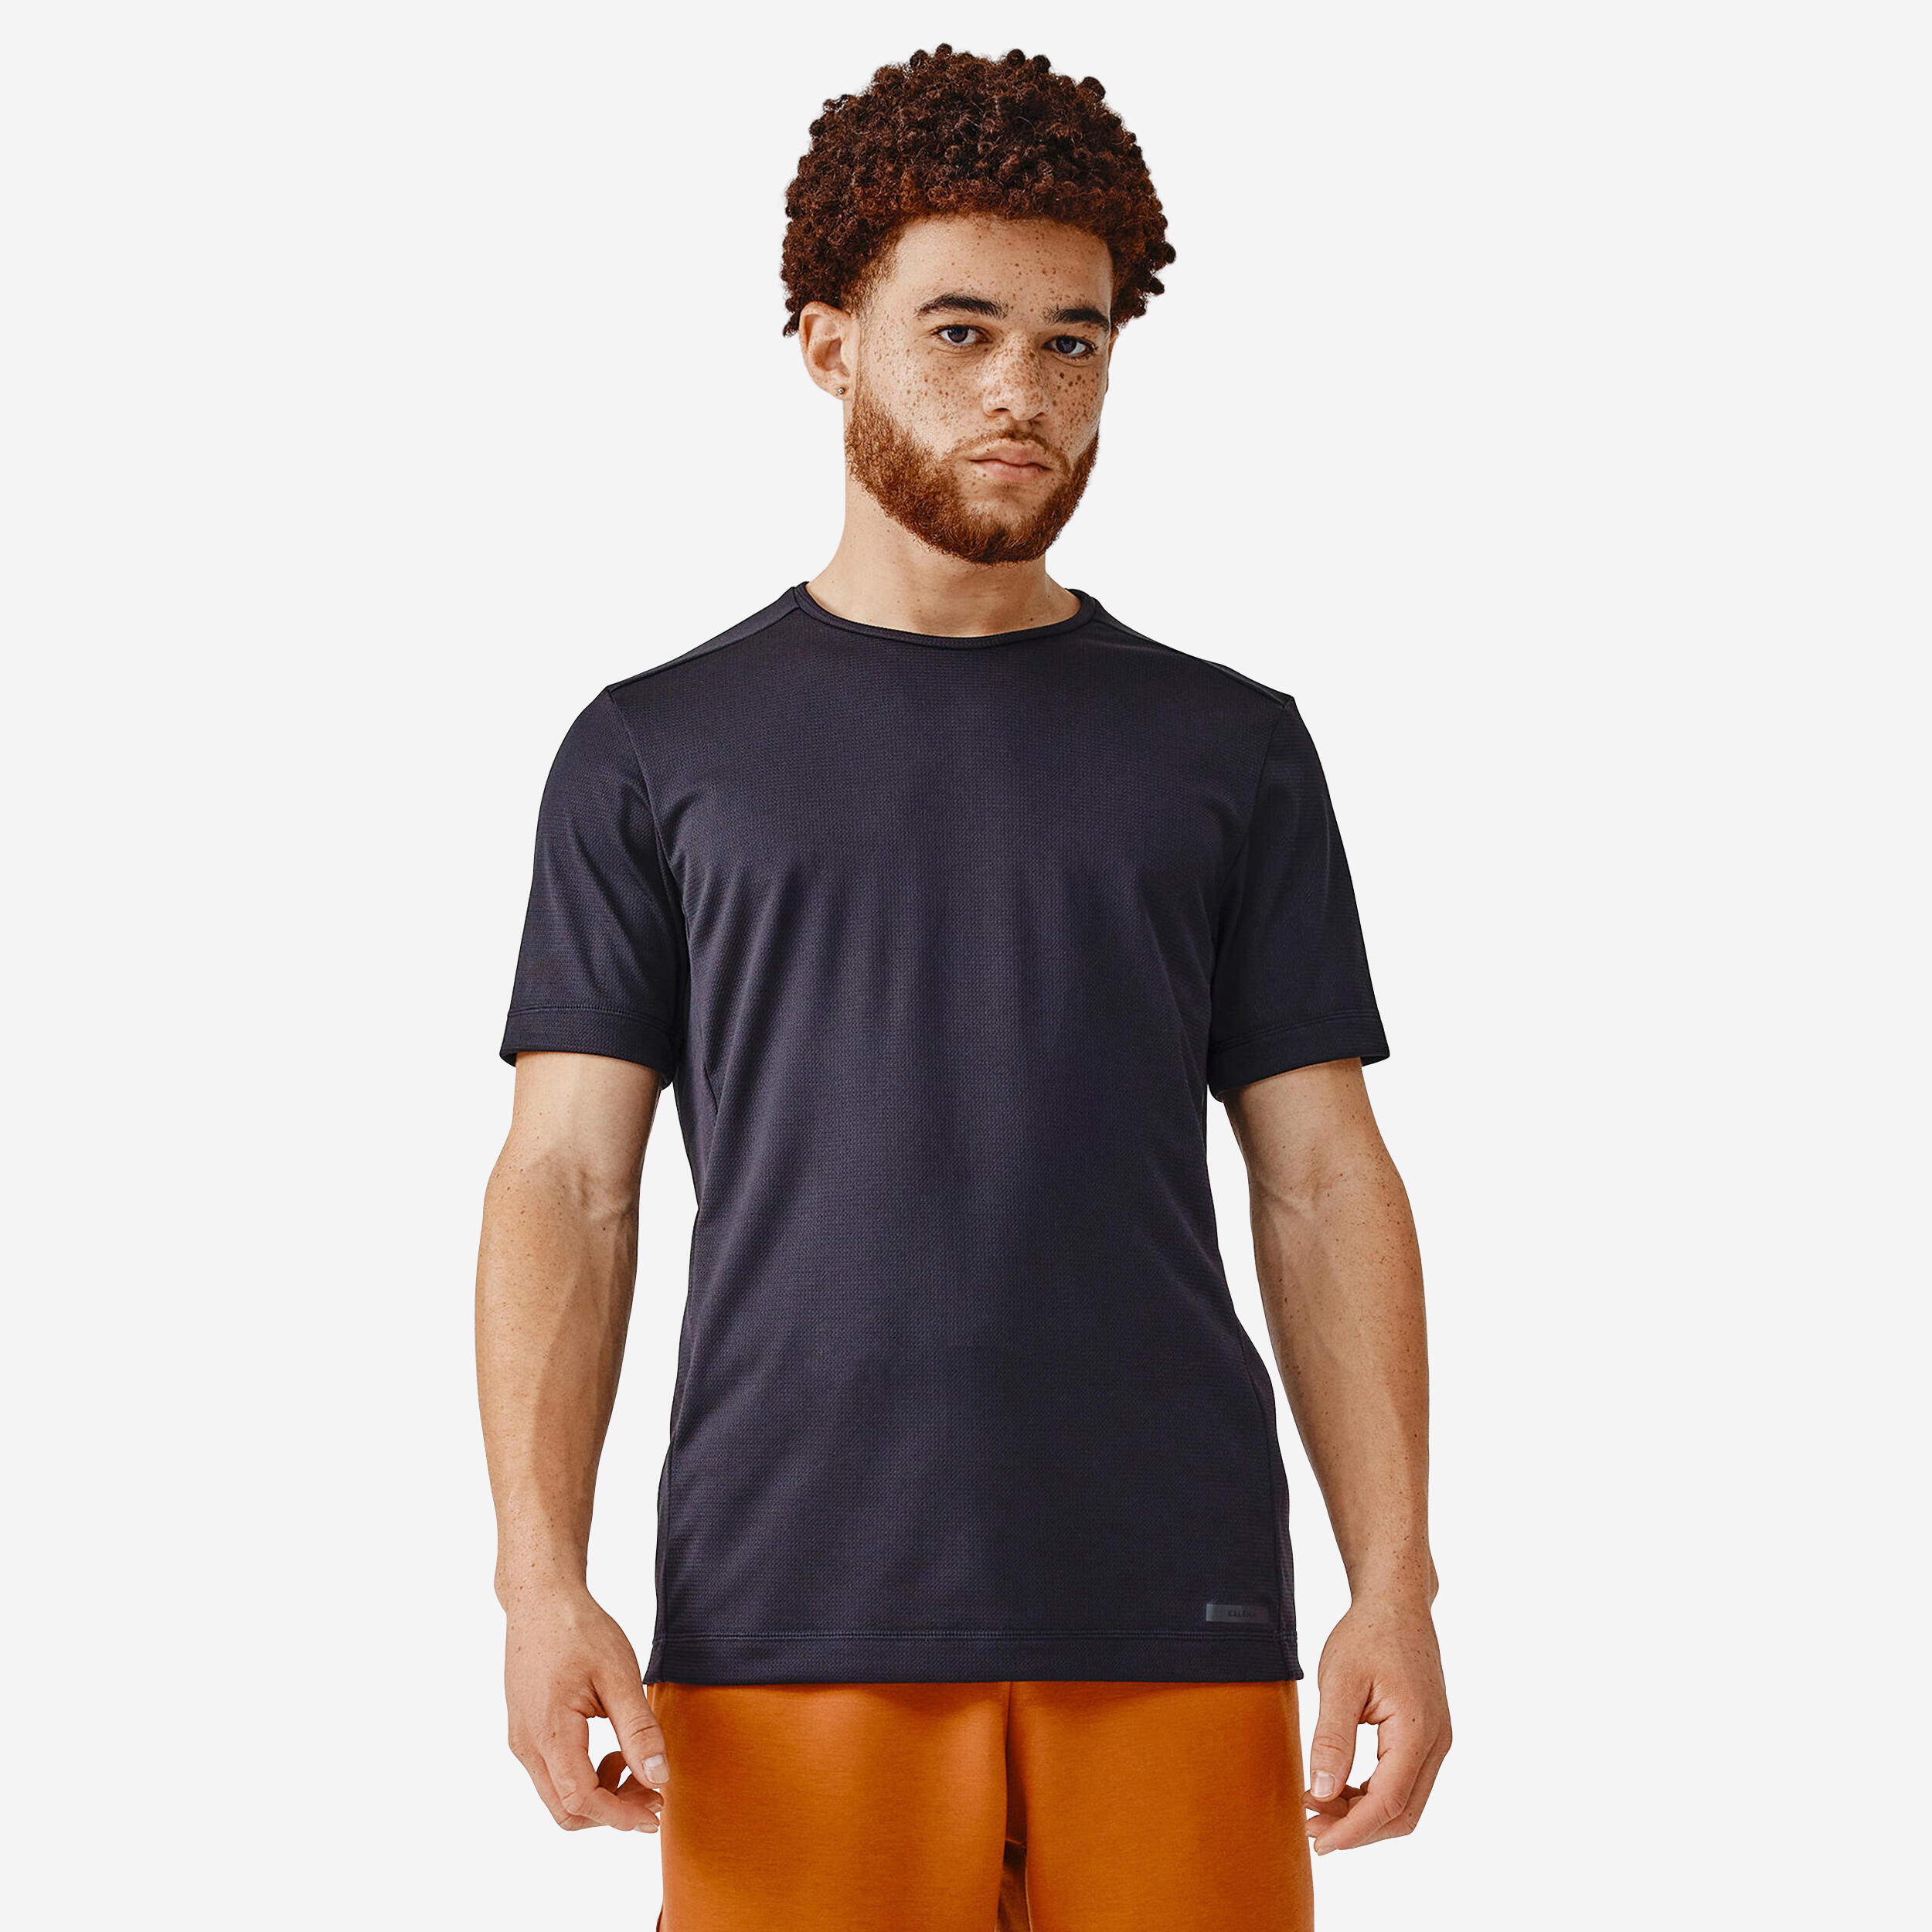 KALENJI Dry Men's Breathable Running T-shirt - Black